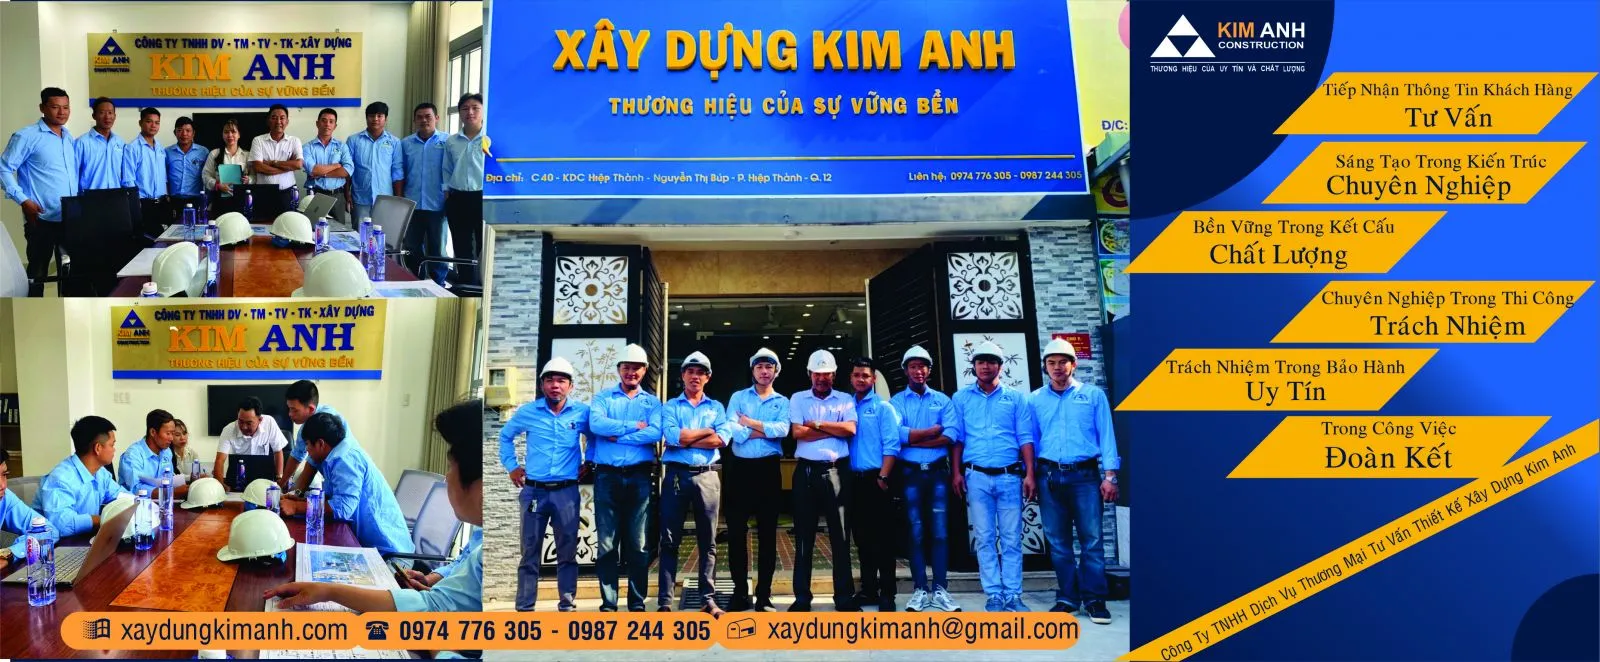 Xây Dựng Kim Anh: Công ty xây nhà quận bình tân